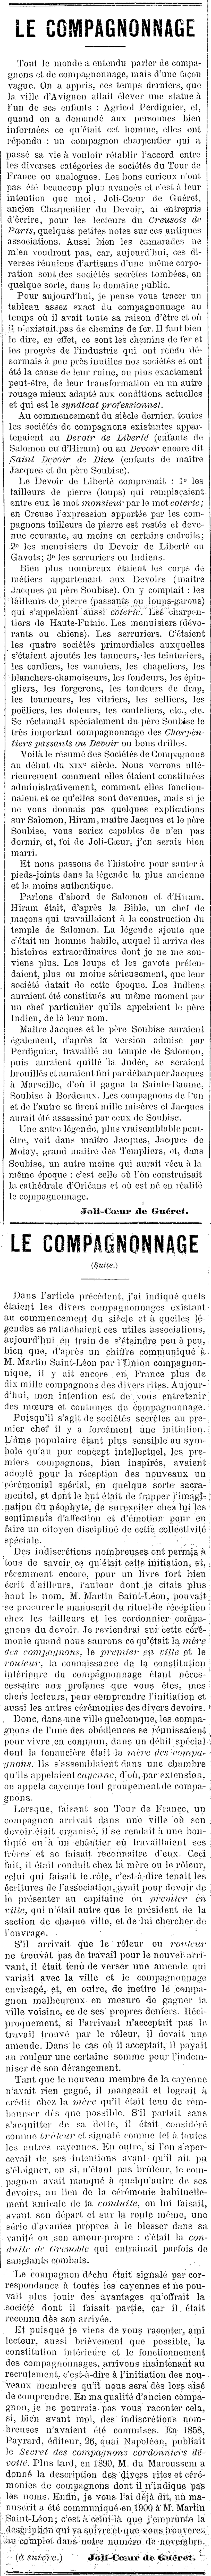 19020810 1012 Le Creusois de Paris Le Compagnonage